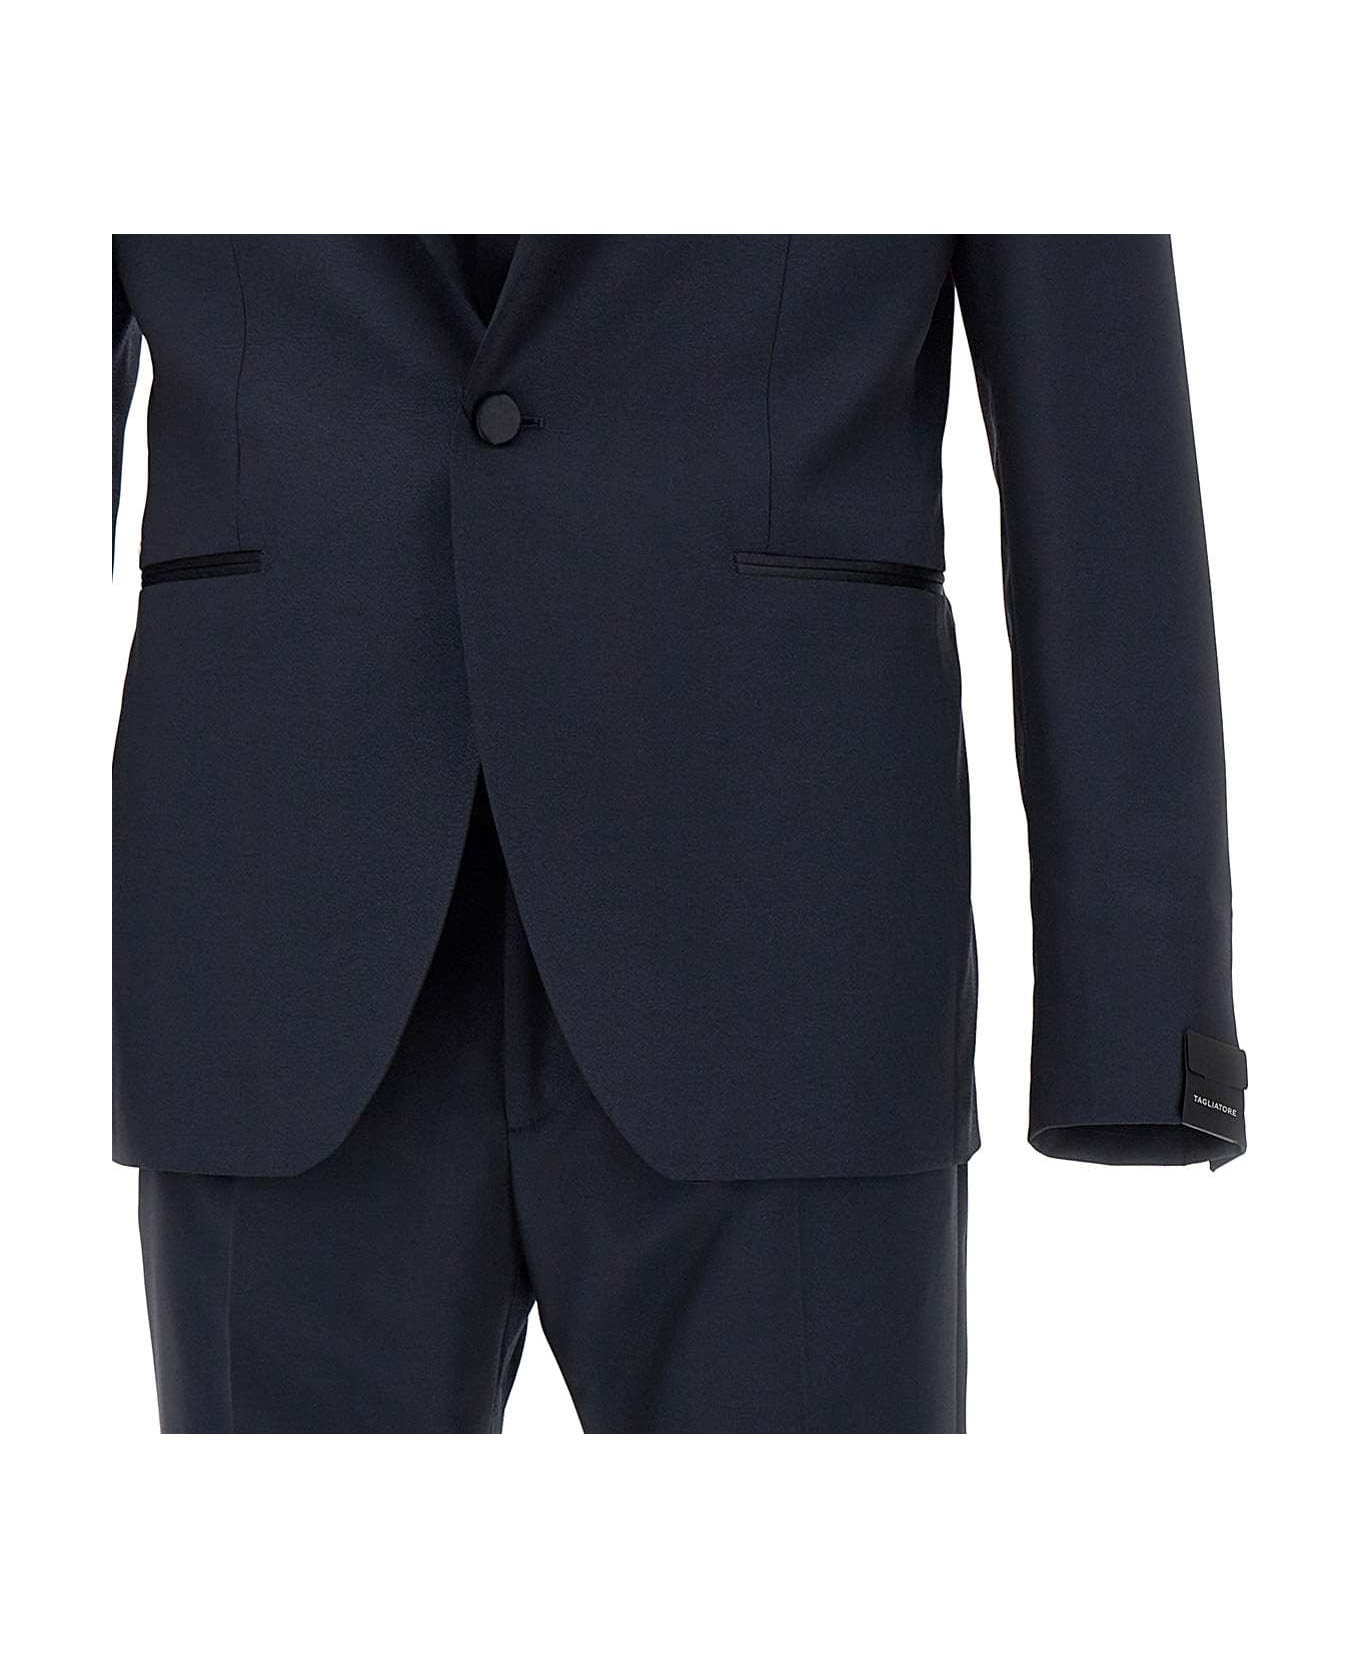 Tagliatore Three-piece Suit - BLUE